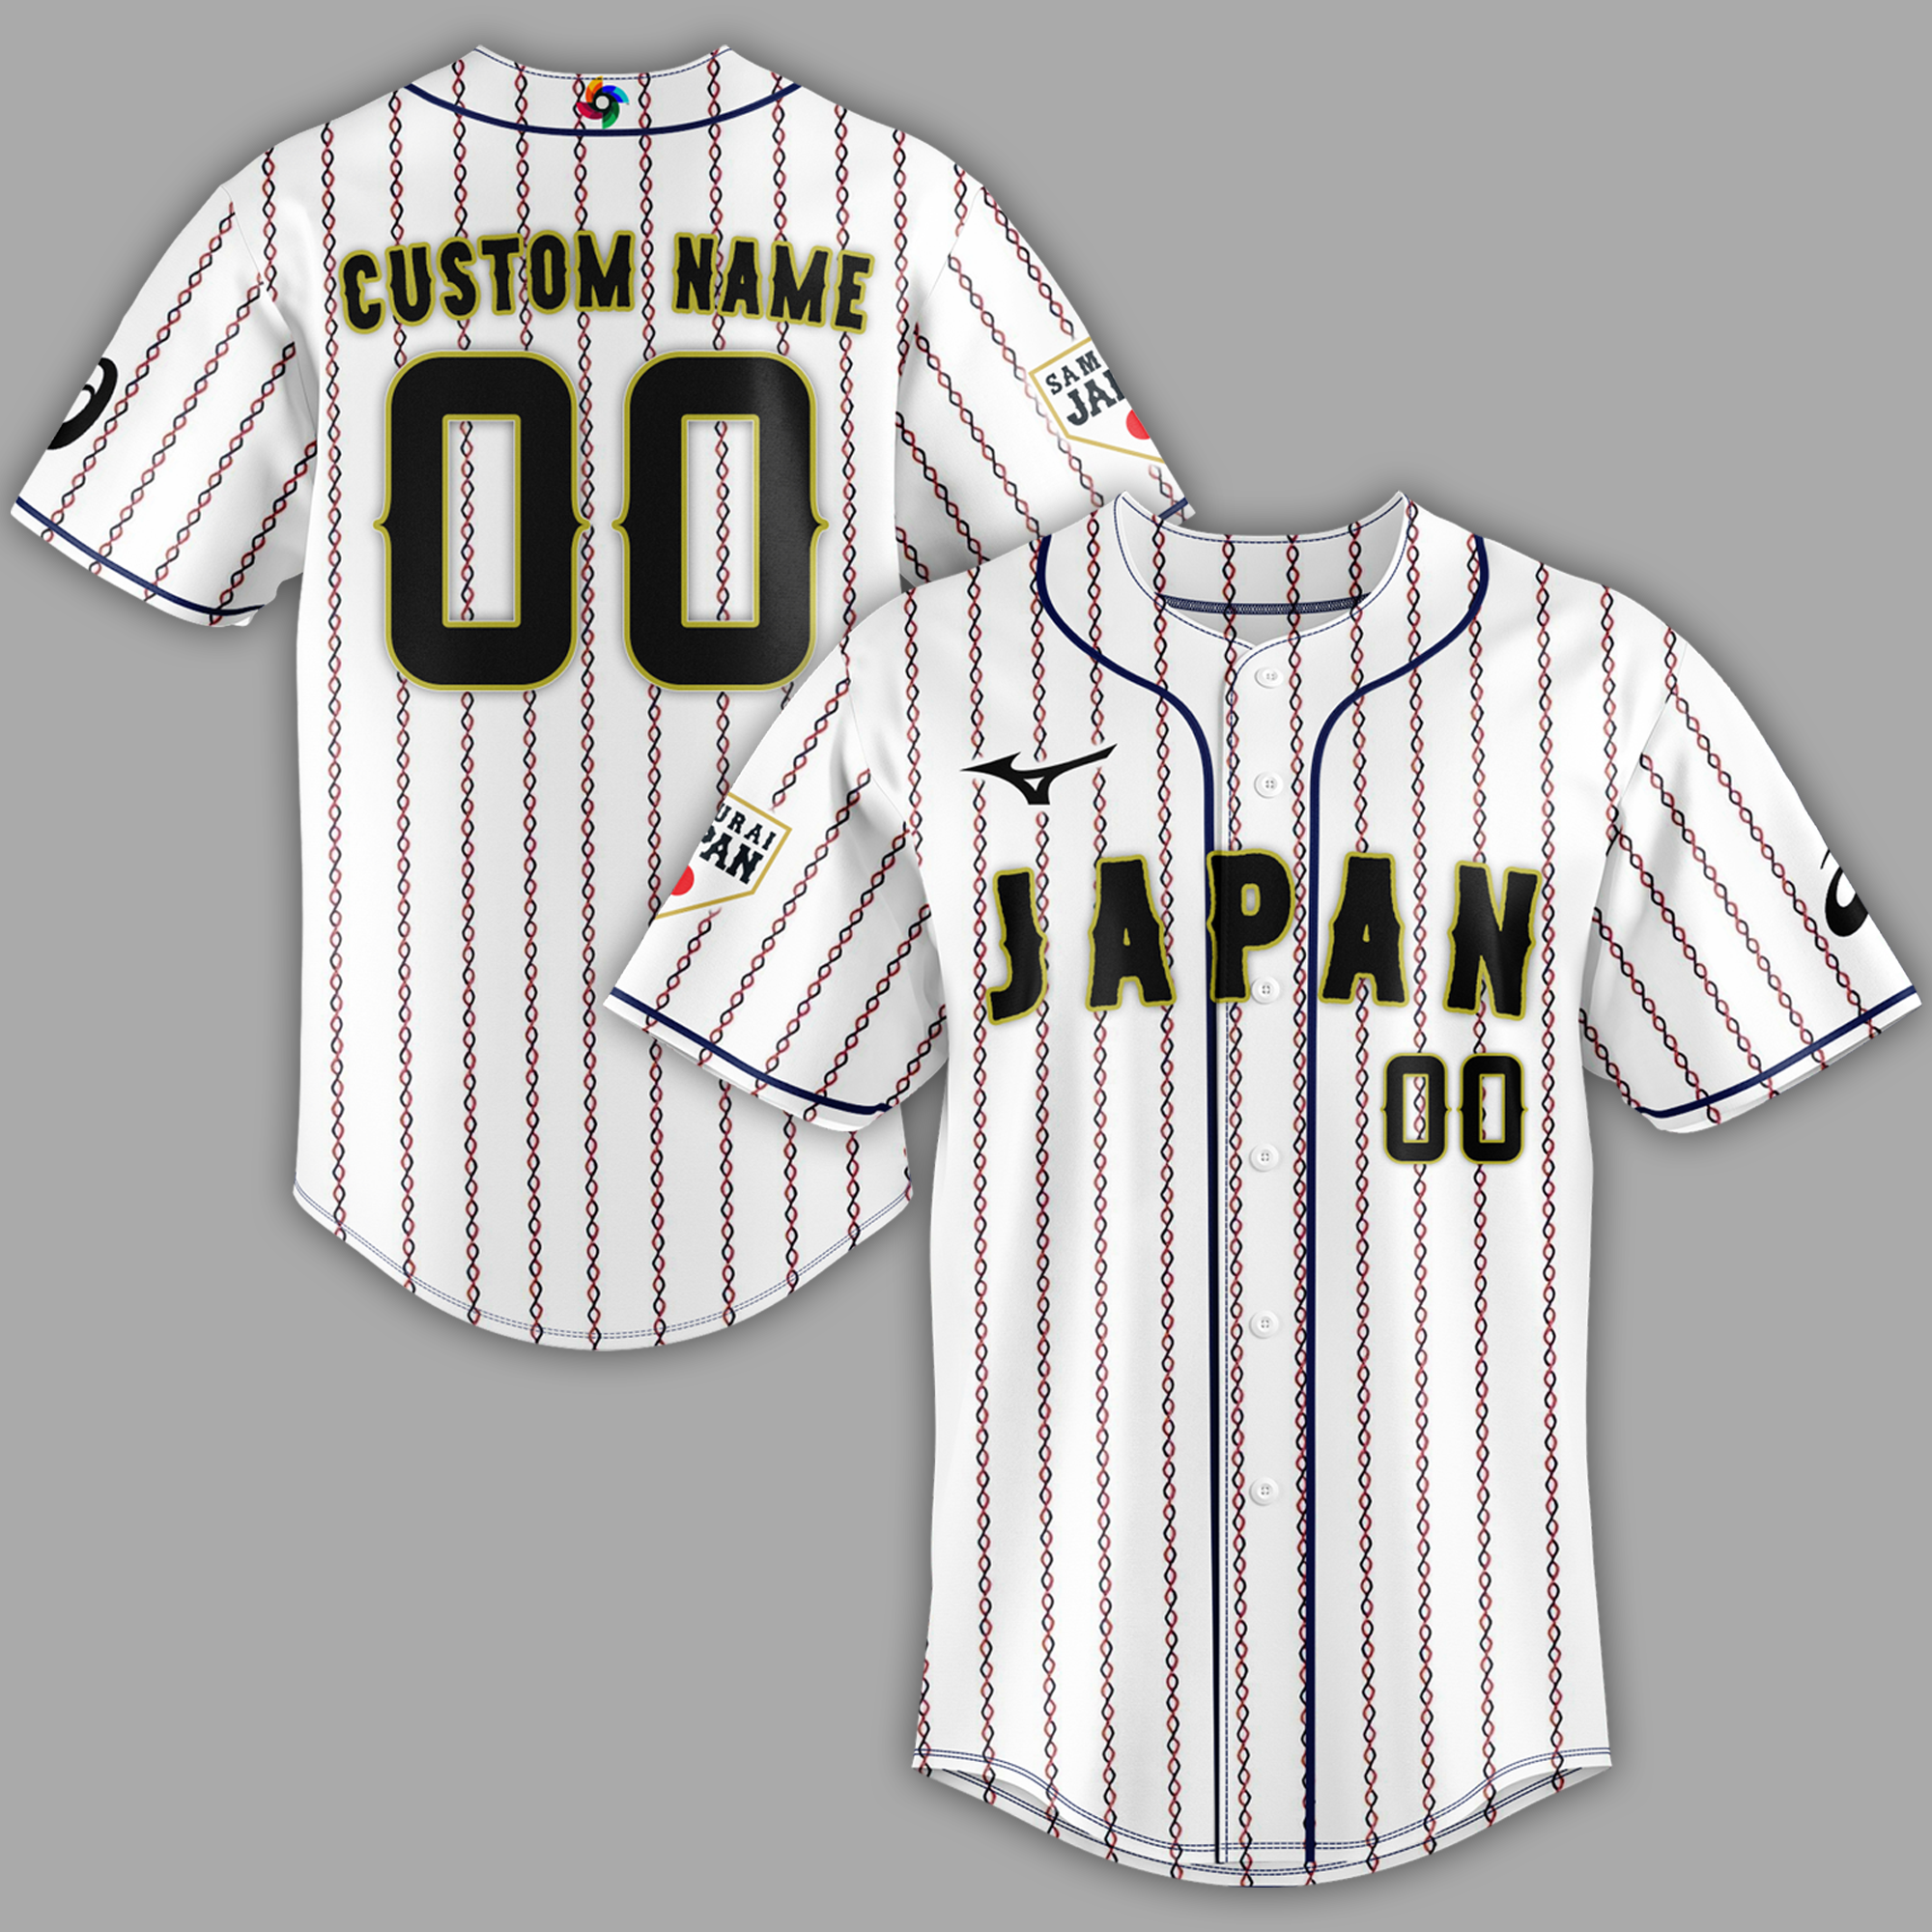 Japan World Baseball Classic Champions Jersey - BTF Store